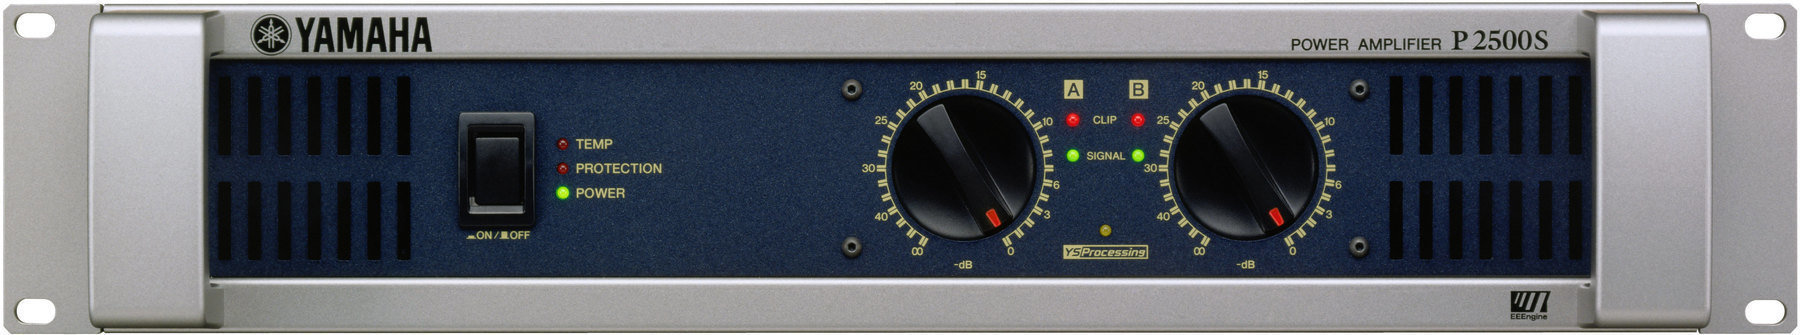 Power amplifier Yamaha P 2500 S